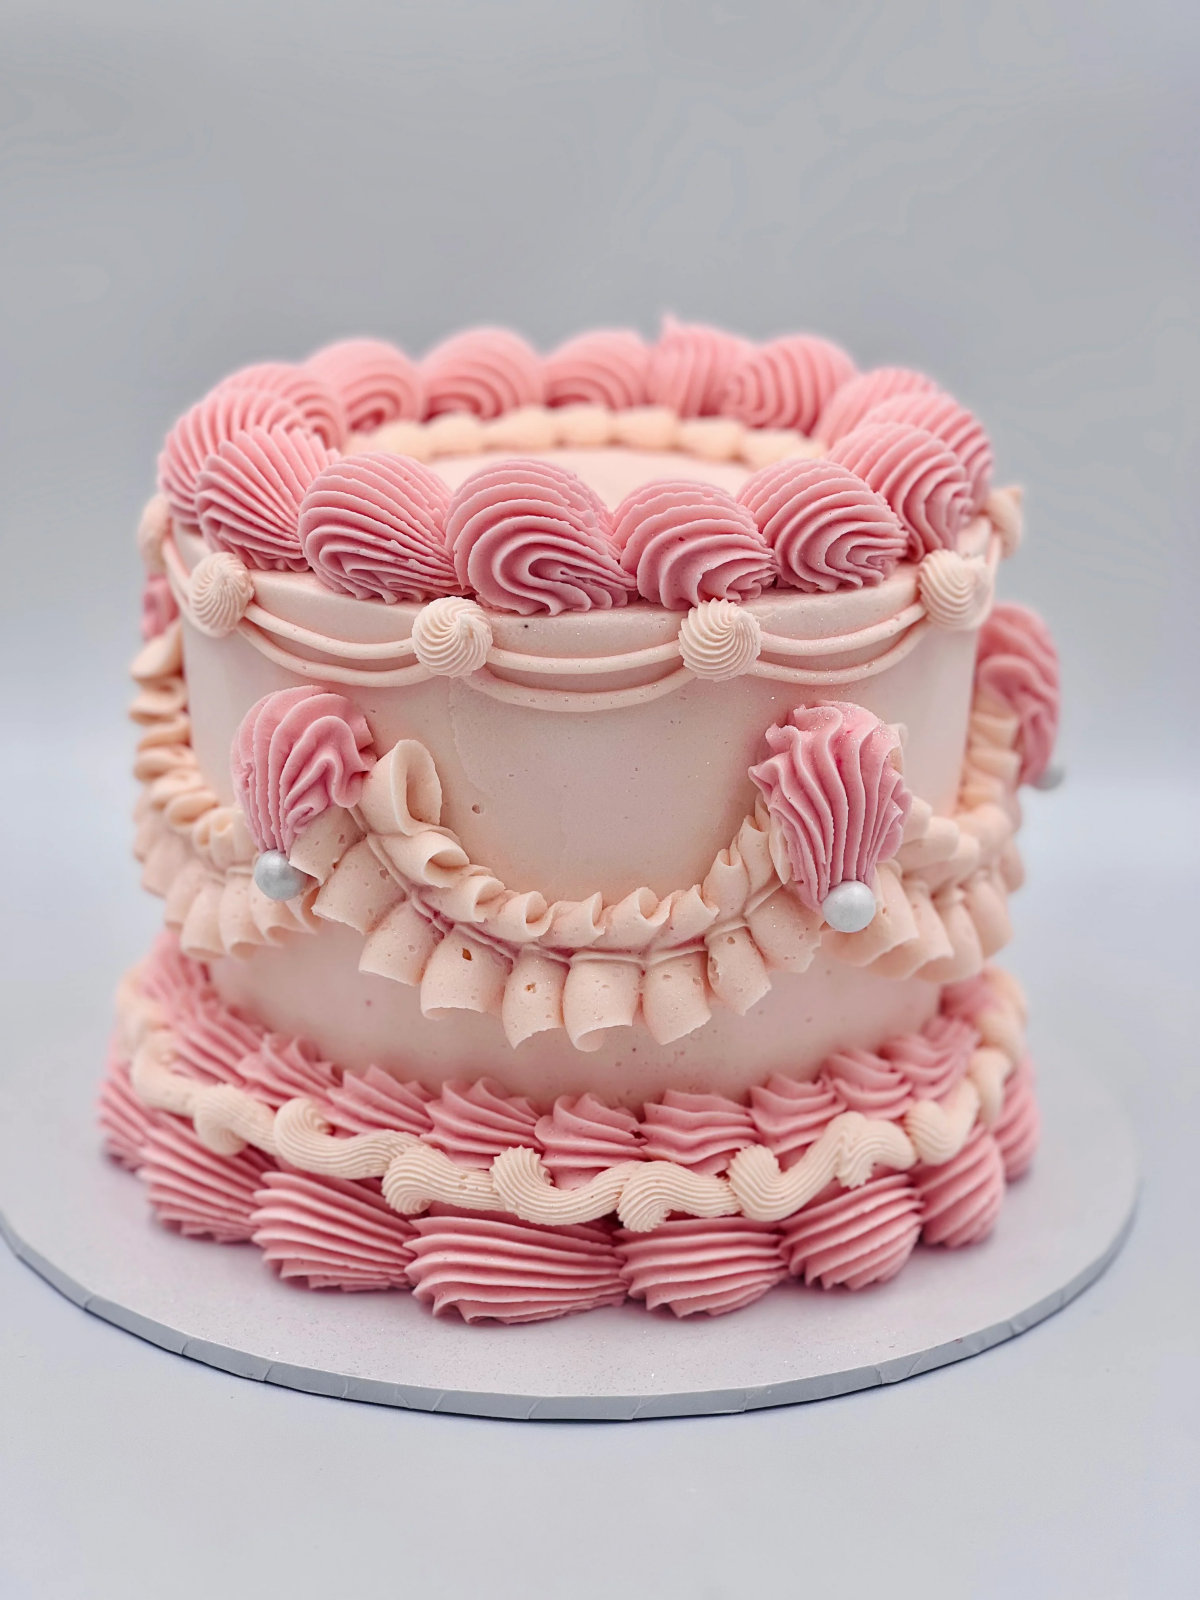 vintage cake decorations pink